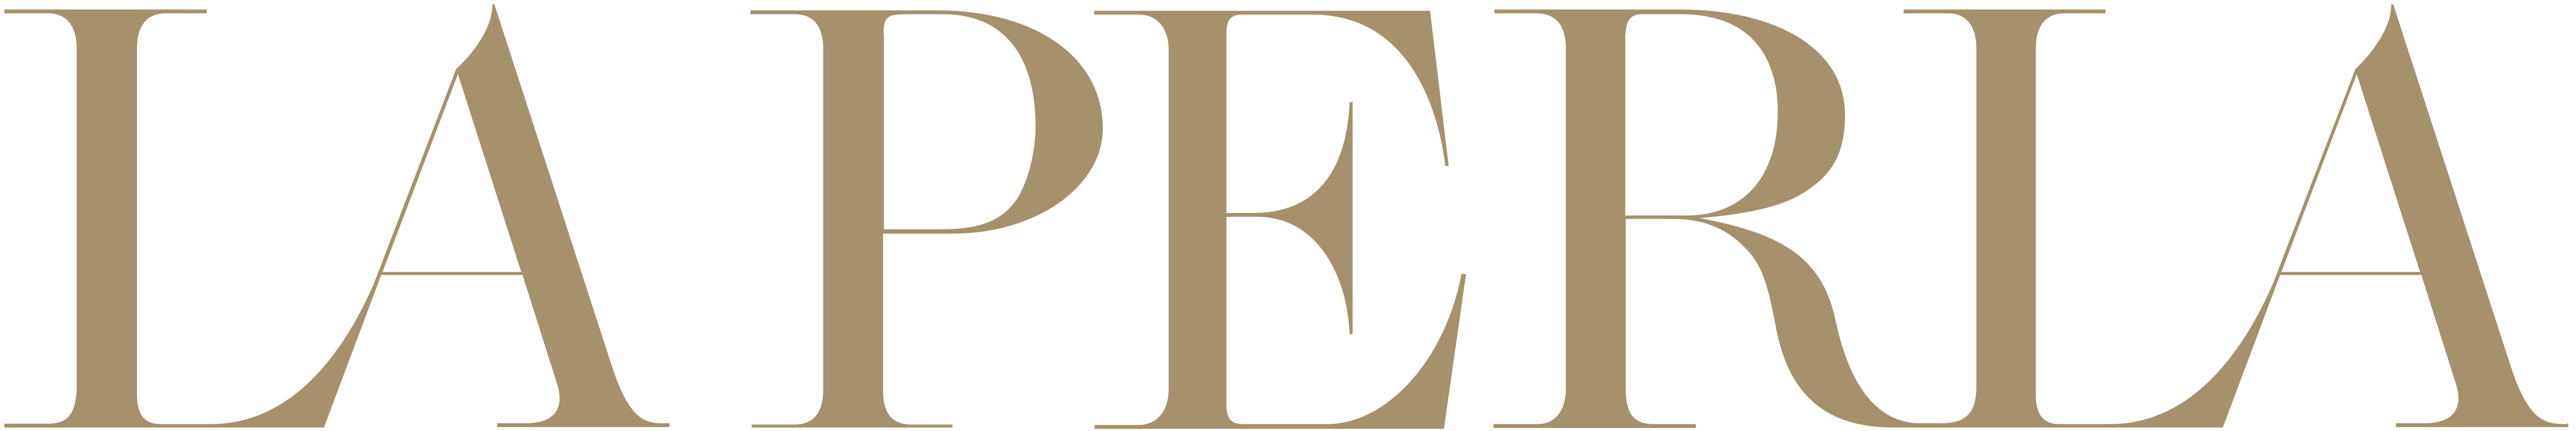 File:La Perla Logo New.svg - Wikipedia